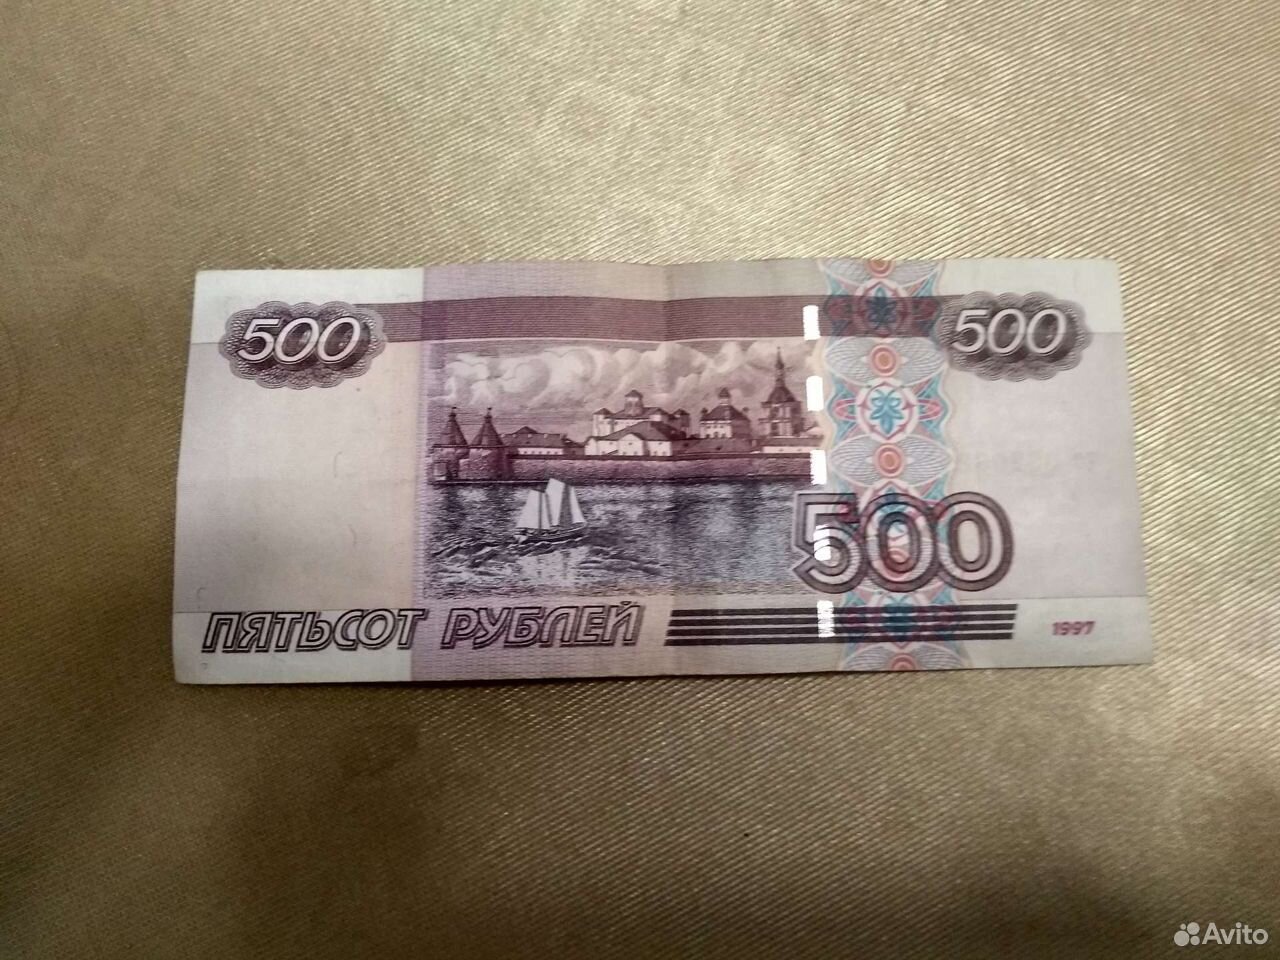 500 рублей 900. Купюра 500 рублей. 500 Рублей. Купюра 500 рублей 1997 года. Купюра 500 рублей 1997.